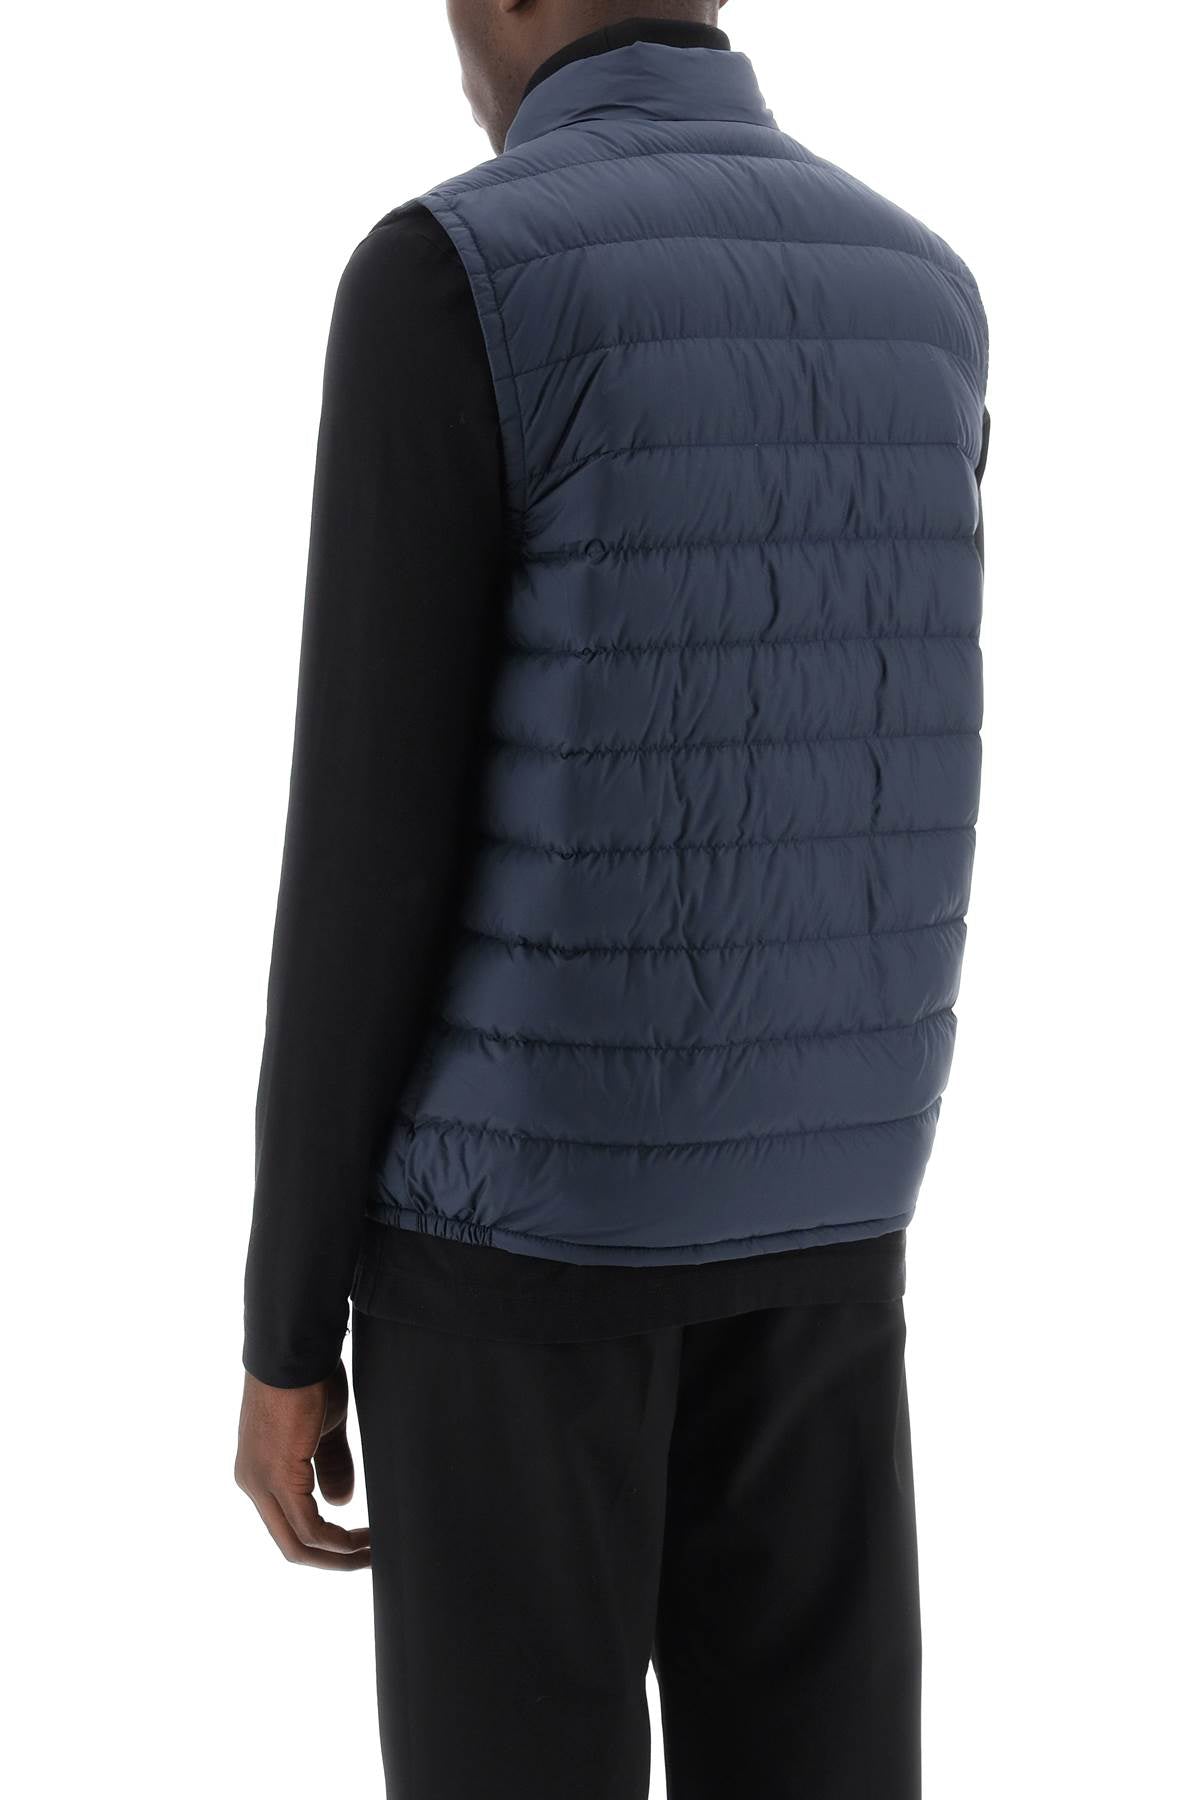 Woolrich Woolrich sundance puffer vest